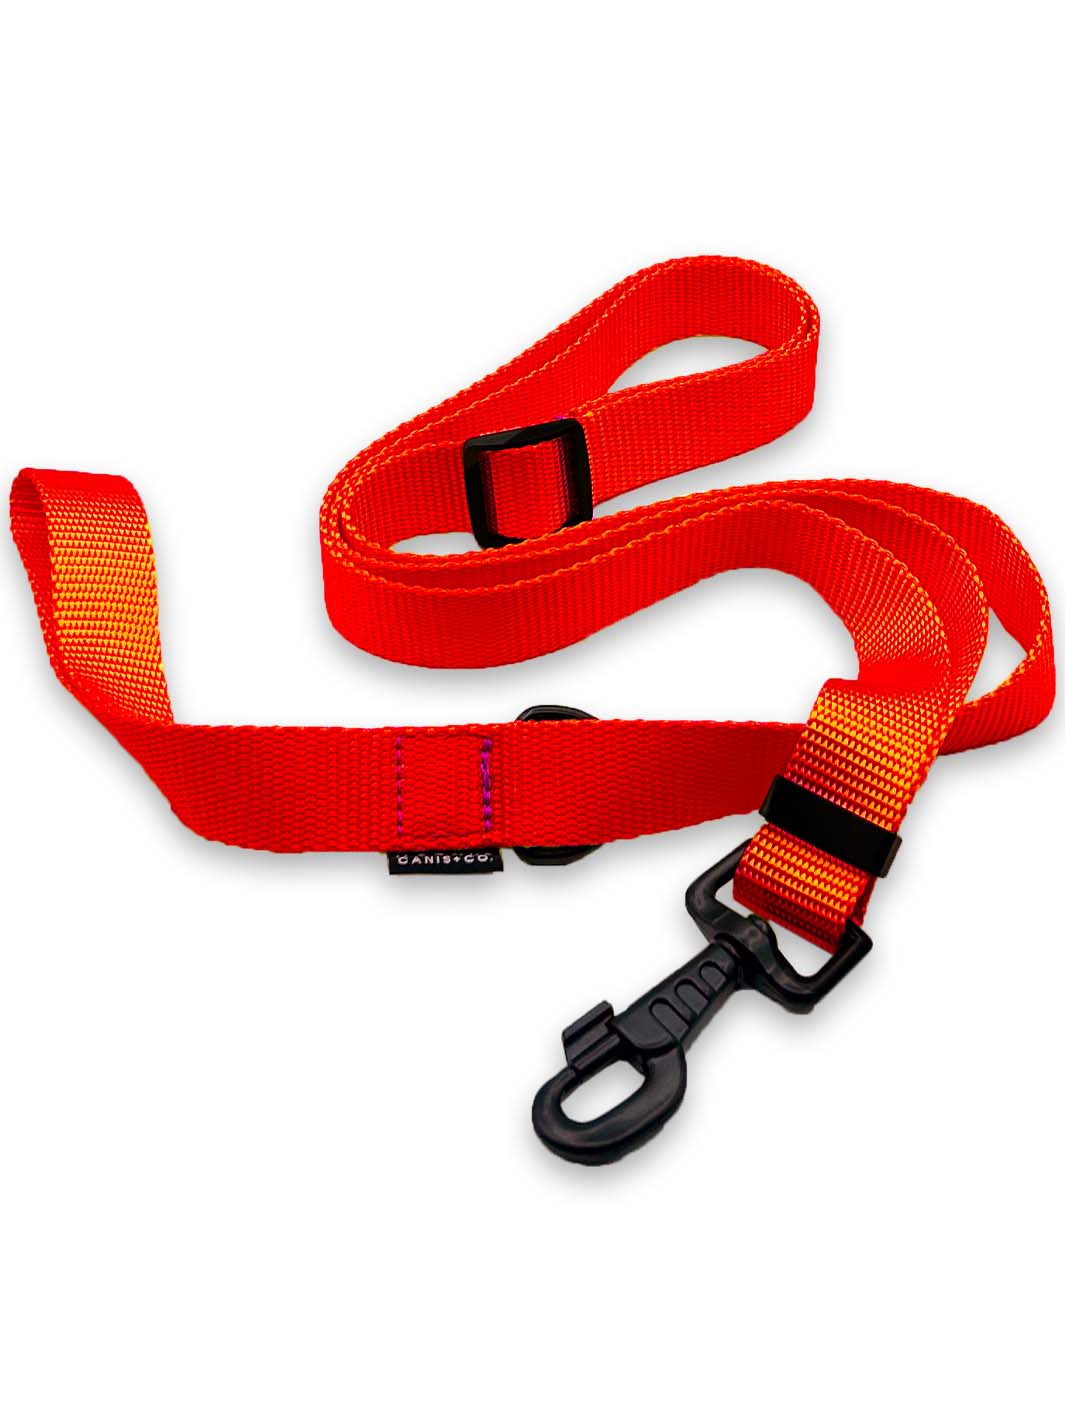 Neon orange nylon strap webbing dog leash bundled up.